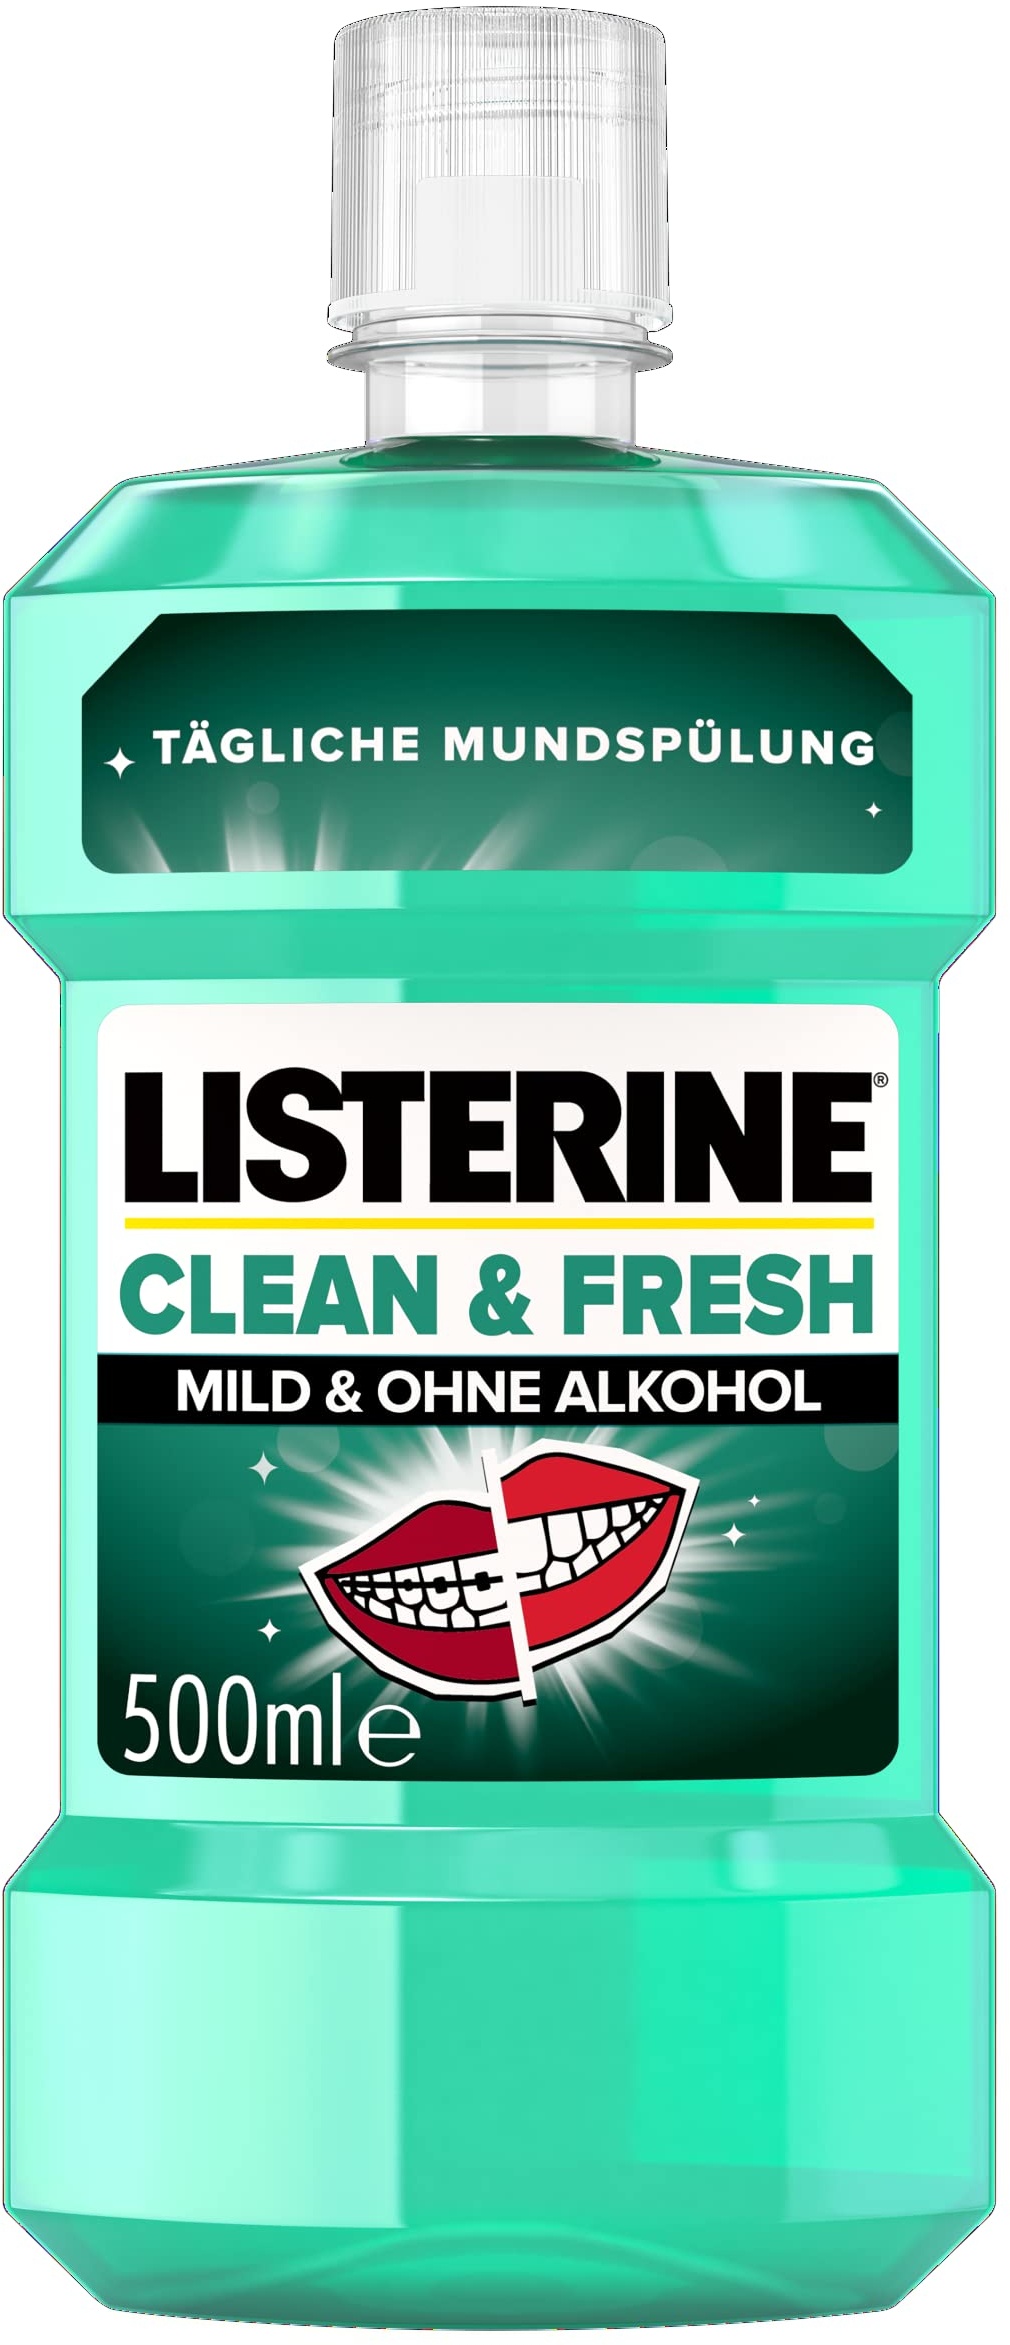 LISTERINE Clean & Fresh (500 ml), antibakterielle Mundspülung ohne Alkohol, Mundwasser mit ätherischen Ölen, mit und ohne Zahnspange